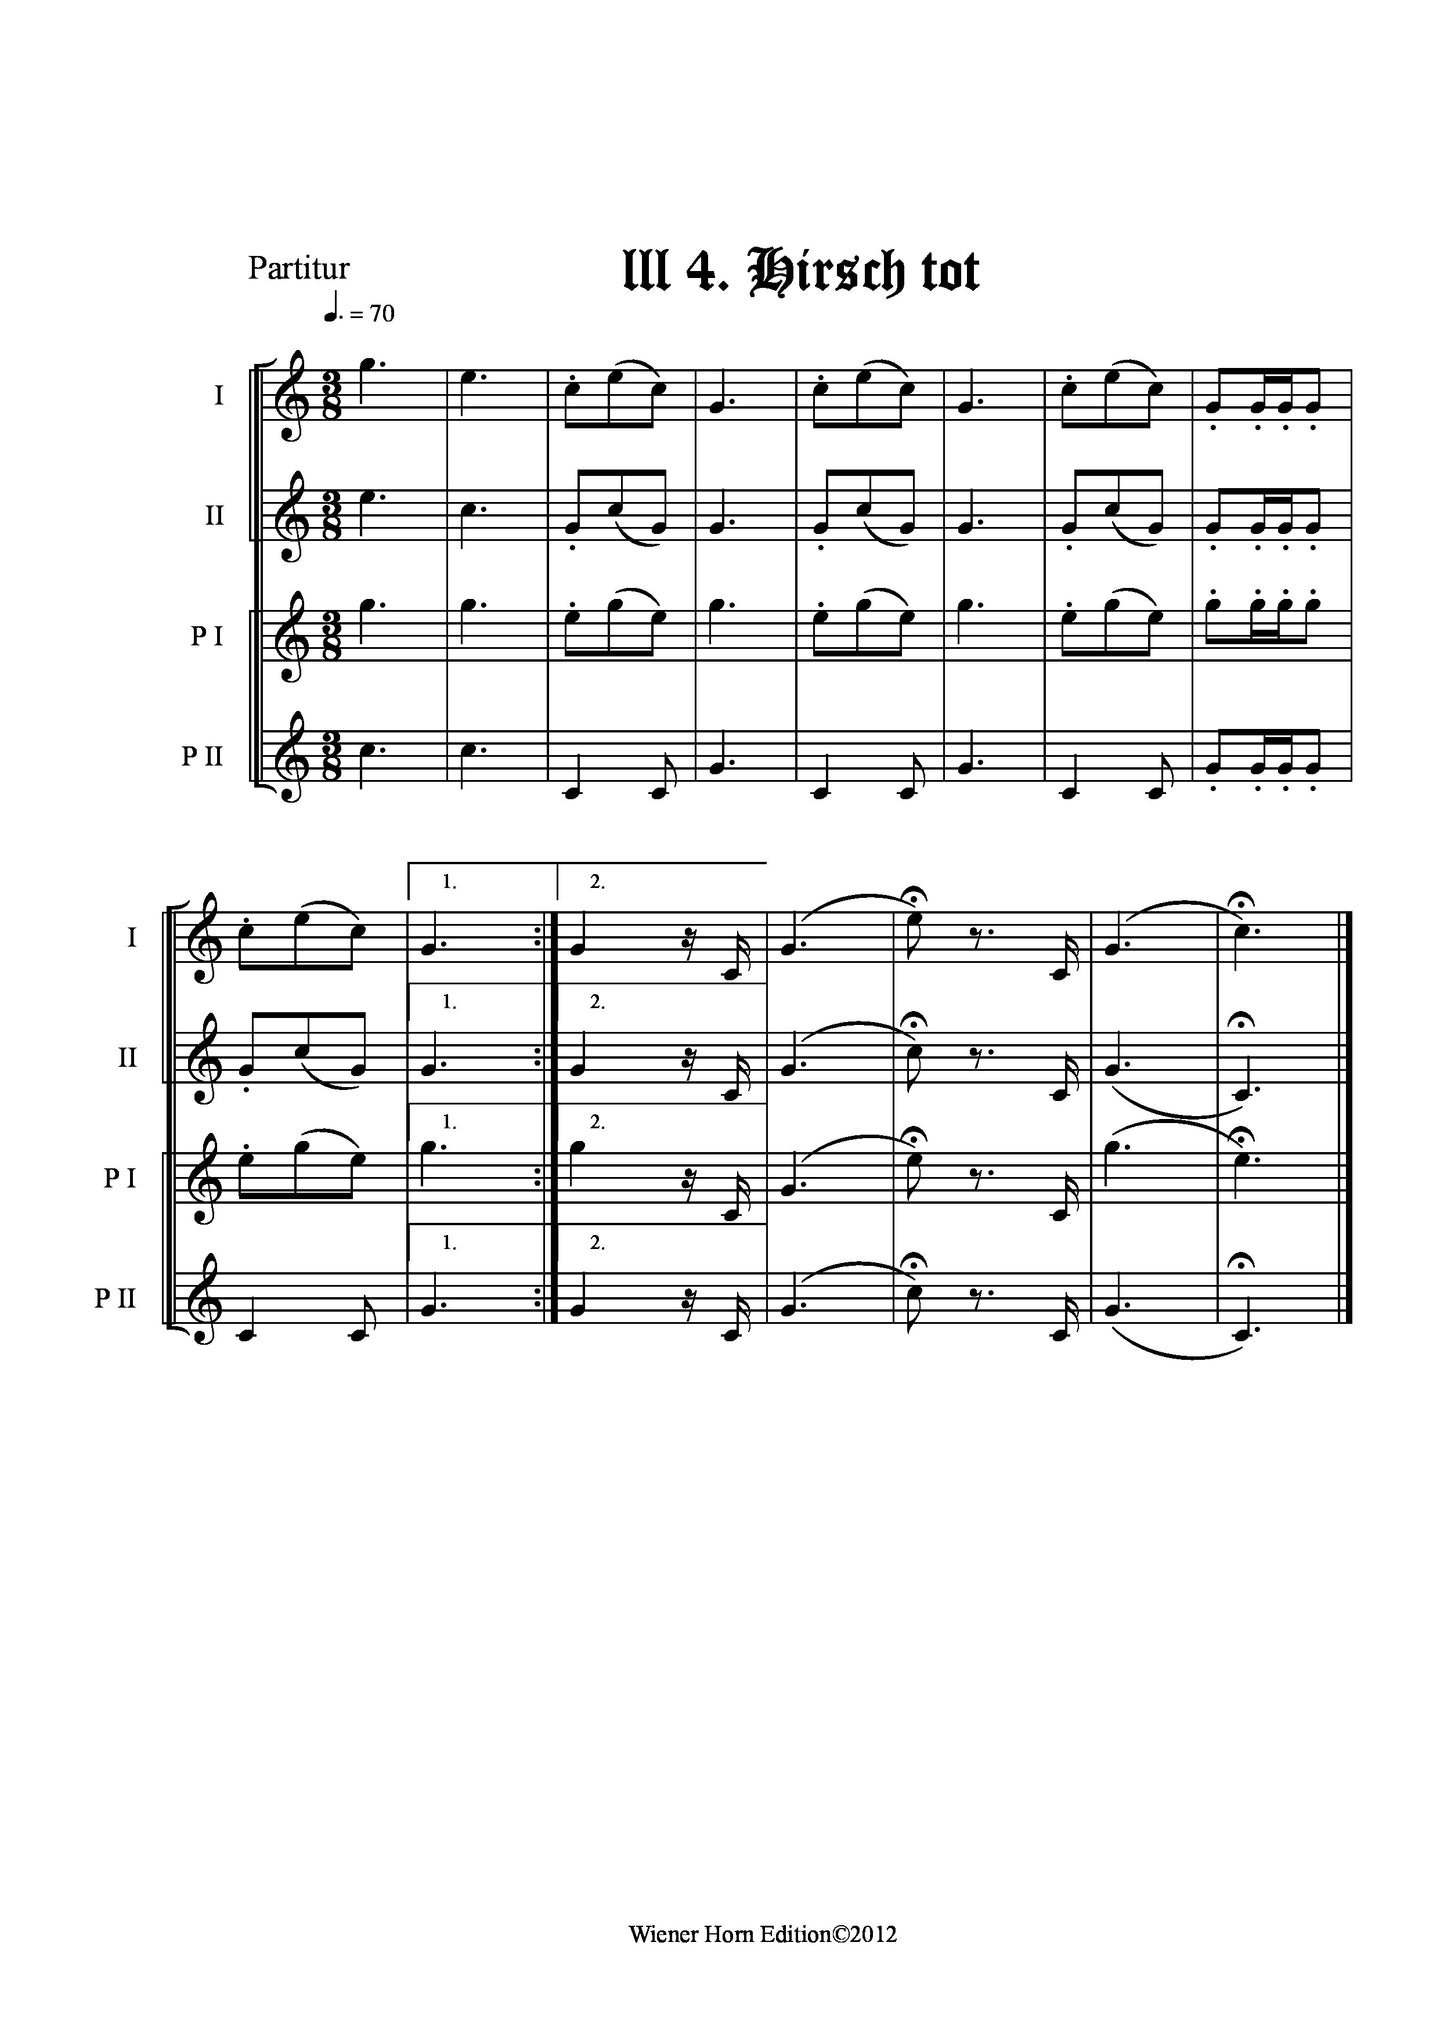 Hirsch tot - Totsignal für 2 Pless Hörner & 2 Parforce Hörner in B mit Text